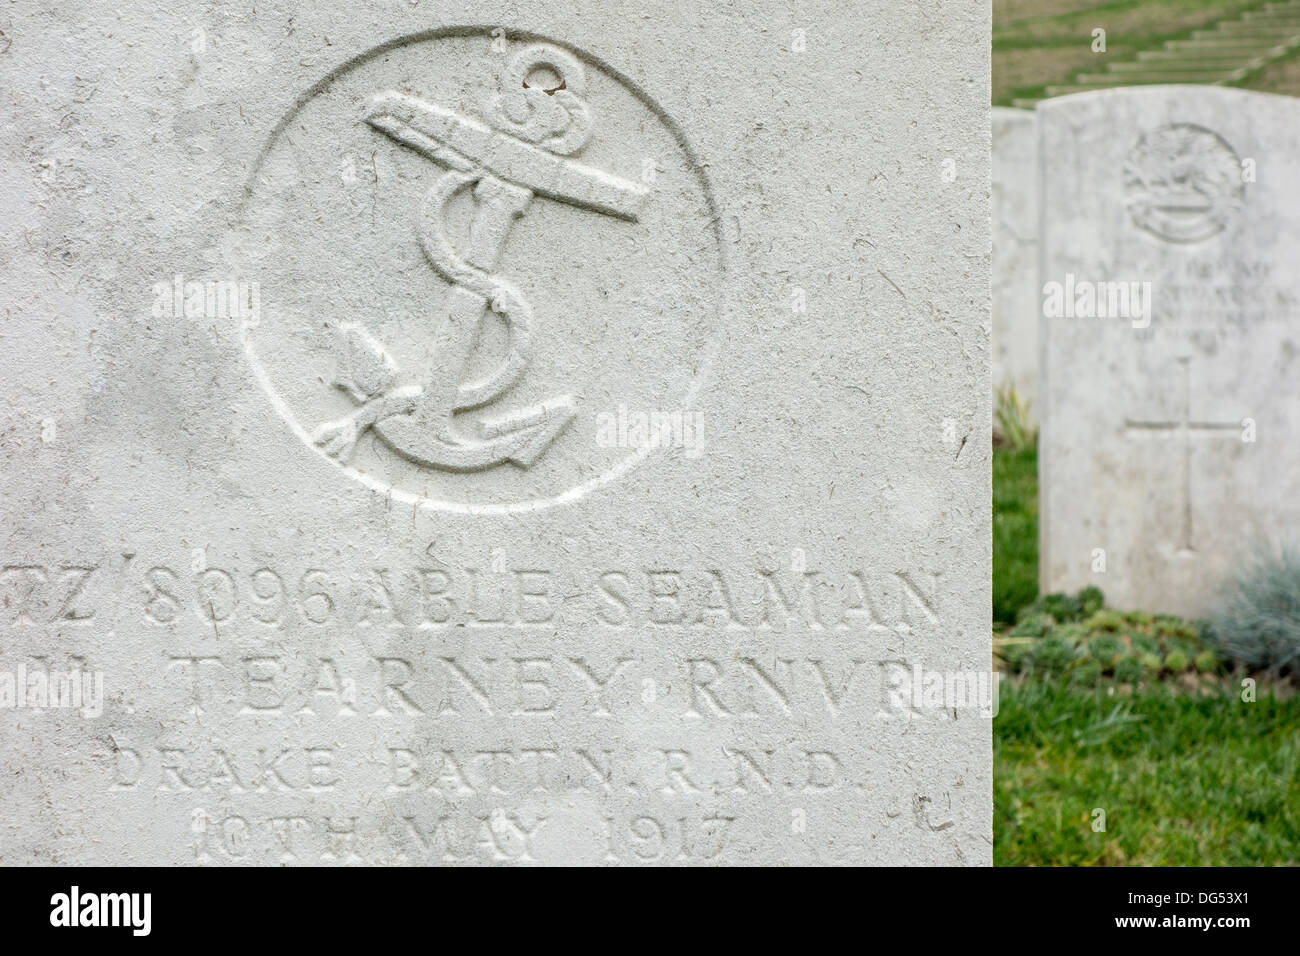 Drake Bataillon RND / Royal Naval Division Regiments-Abzeichen auf Grabstein im Friedhof der Commonwealth War Graves Commission Stockfoto